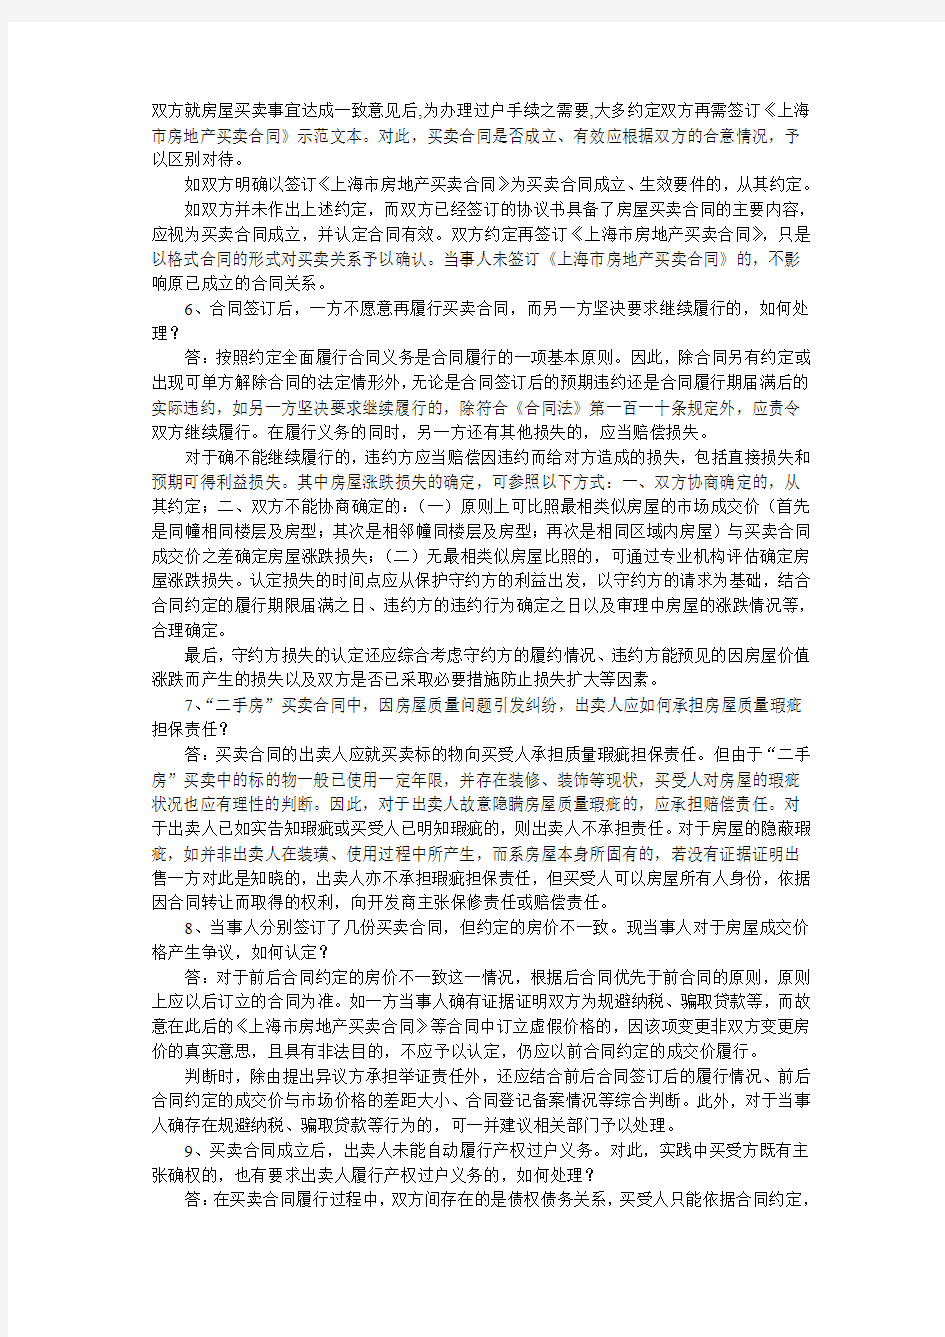 上海高院关于审理“二手房”买卖案件若干问题的解答